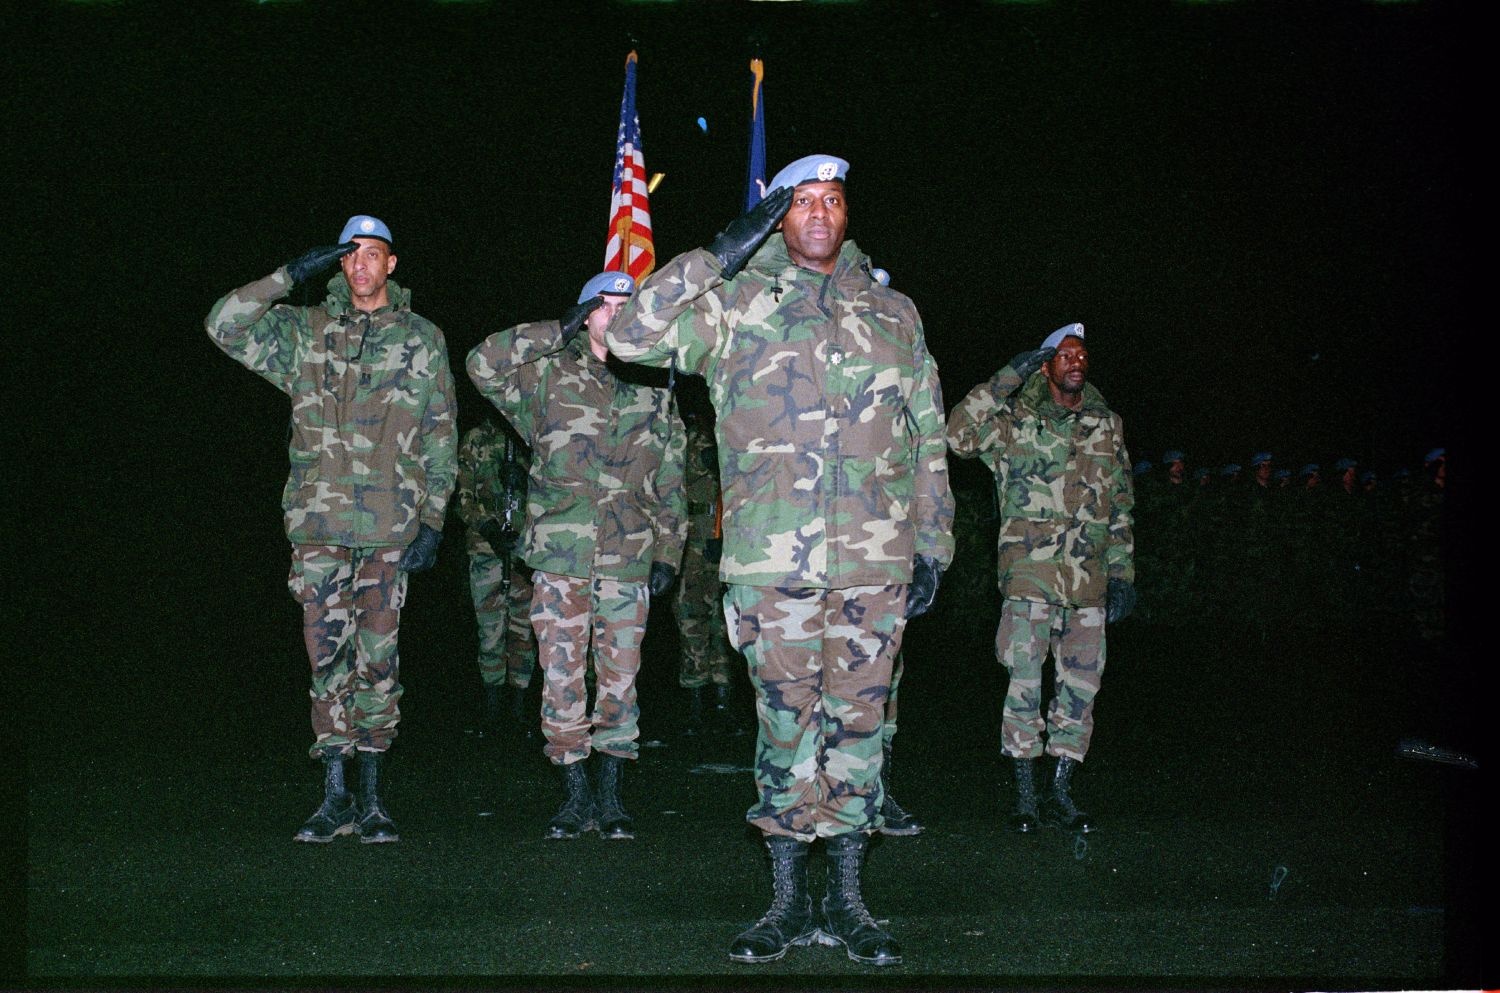 Fotografie: Begrüßung der Task Force 6-502nd nach ihrer Rückkehr aus Mazedonien in Berlin-Lichterfelde (AlliiertenMuseum/U.S. Army Photograph Public Domain Mark)